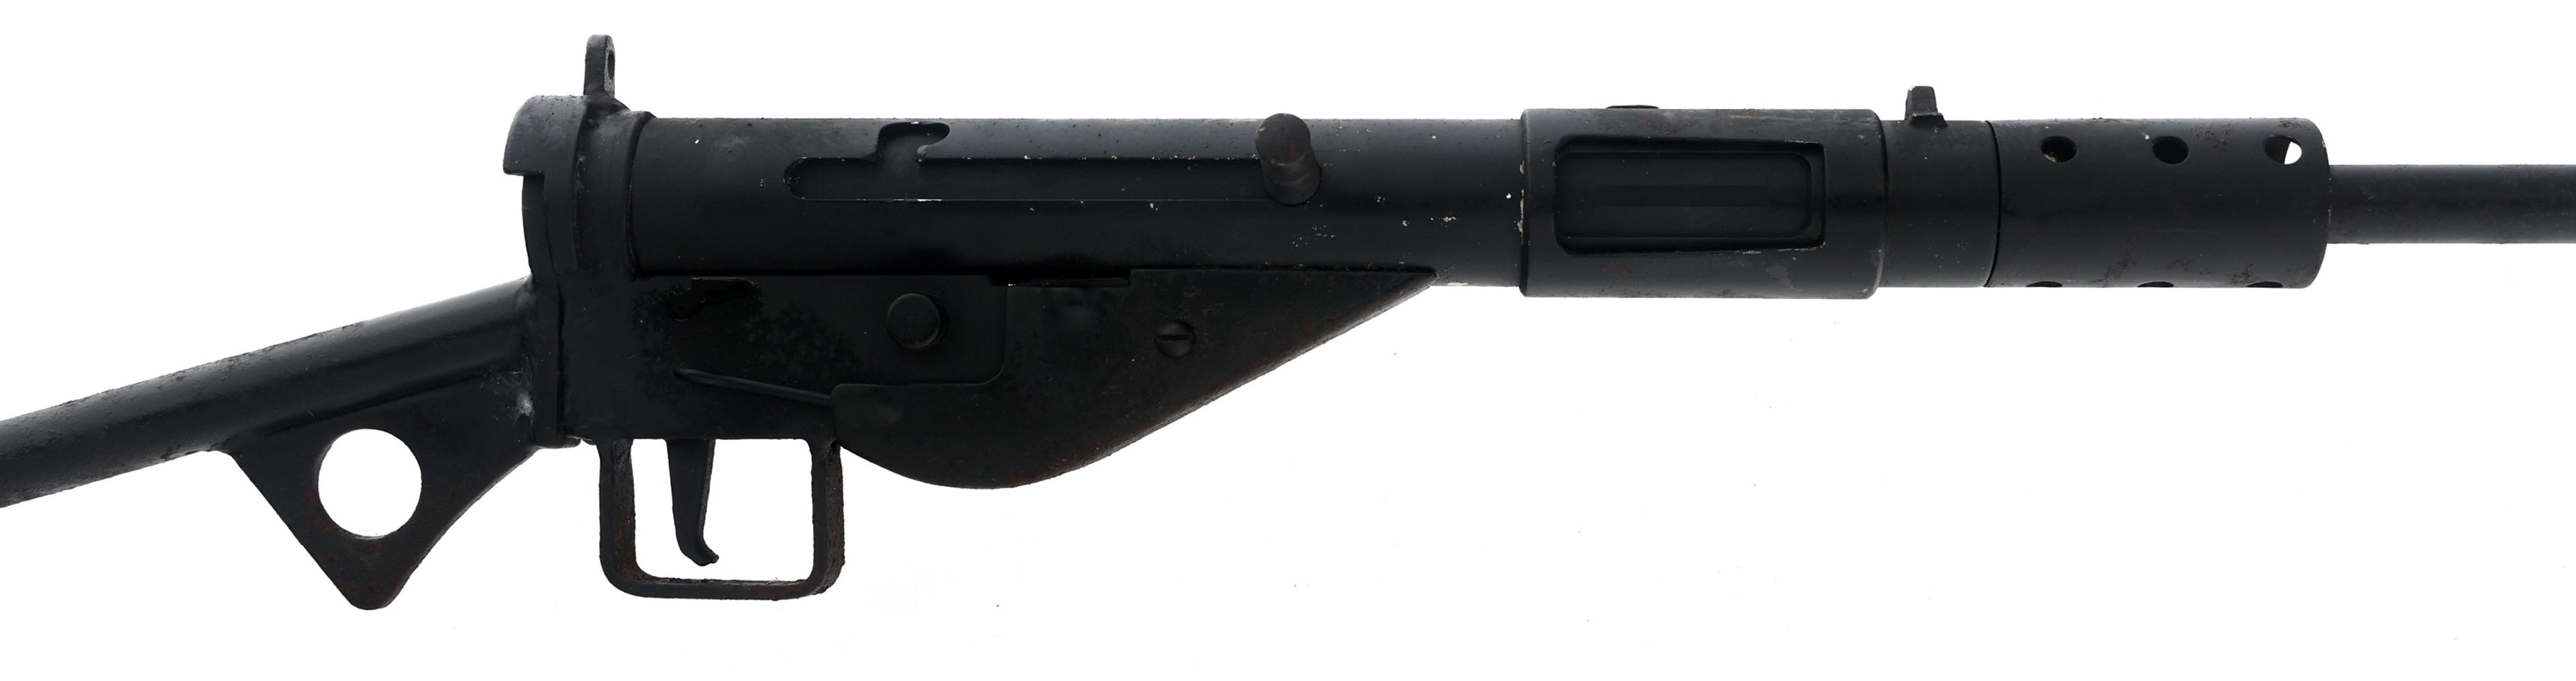 BRITISH STEN Mk II INERT DISPLAY MACHINE GUN